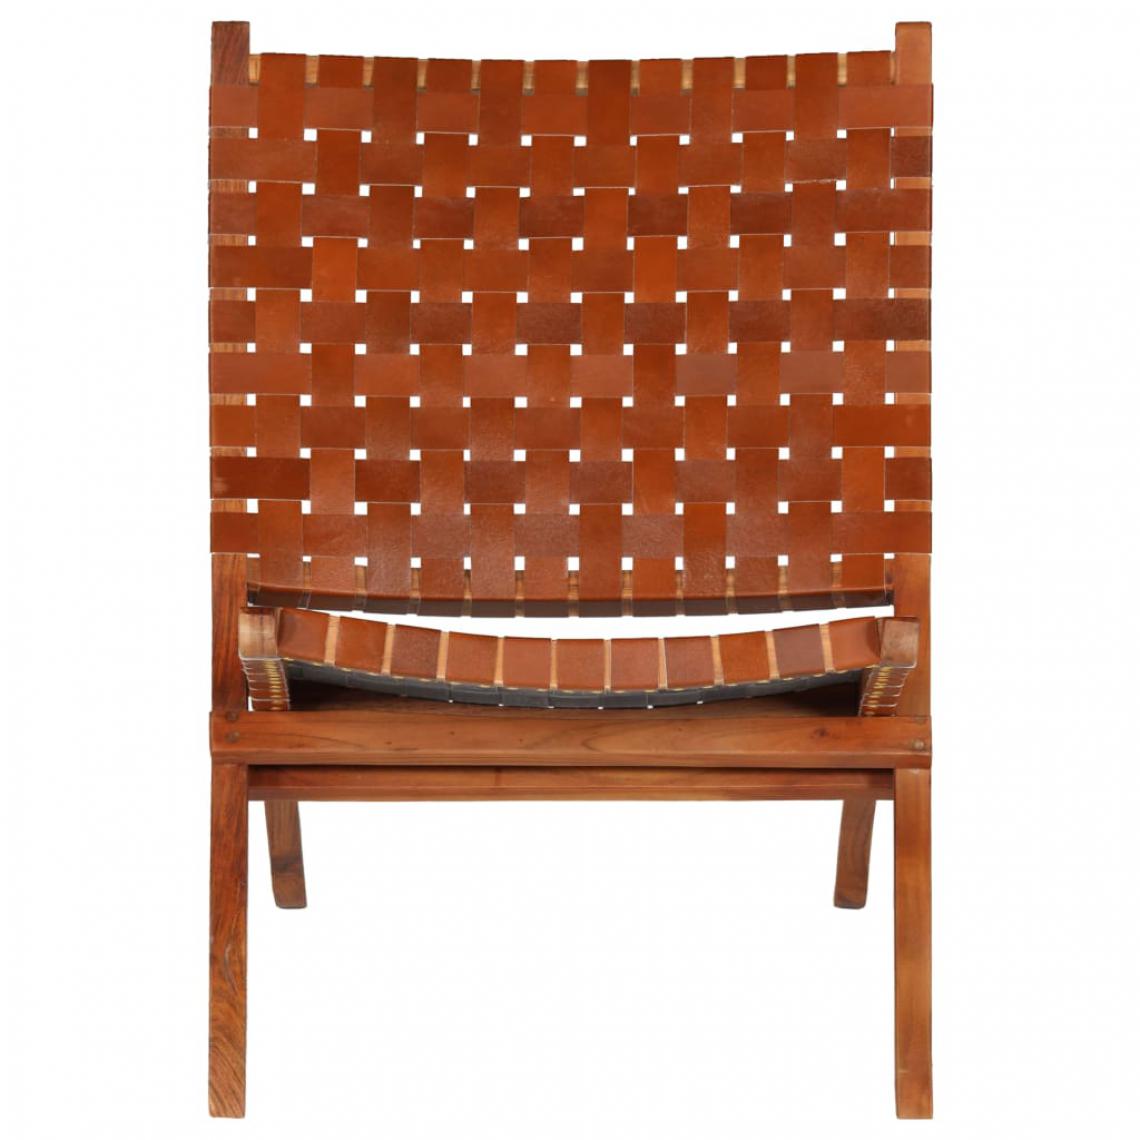 Icaverne - Icaverne - Chaises pliantes et tabourets pliants ensemble Chaise de relaxation Cuir véritable 59x72x79 cm Bandes Marron - Chaises